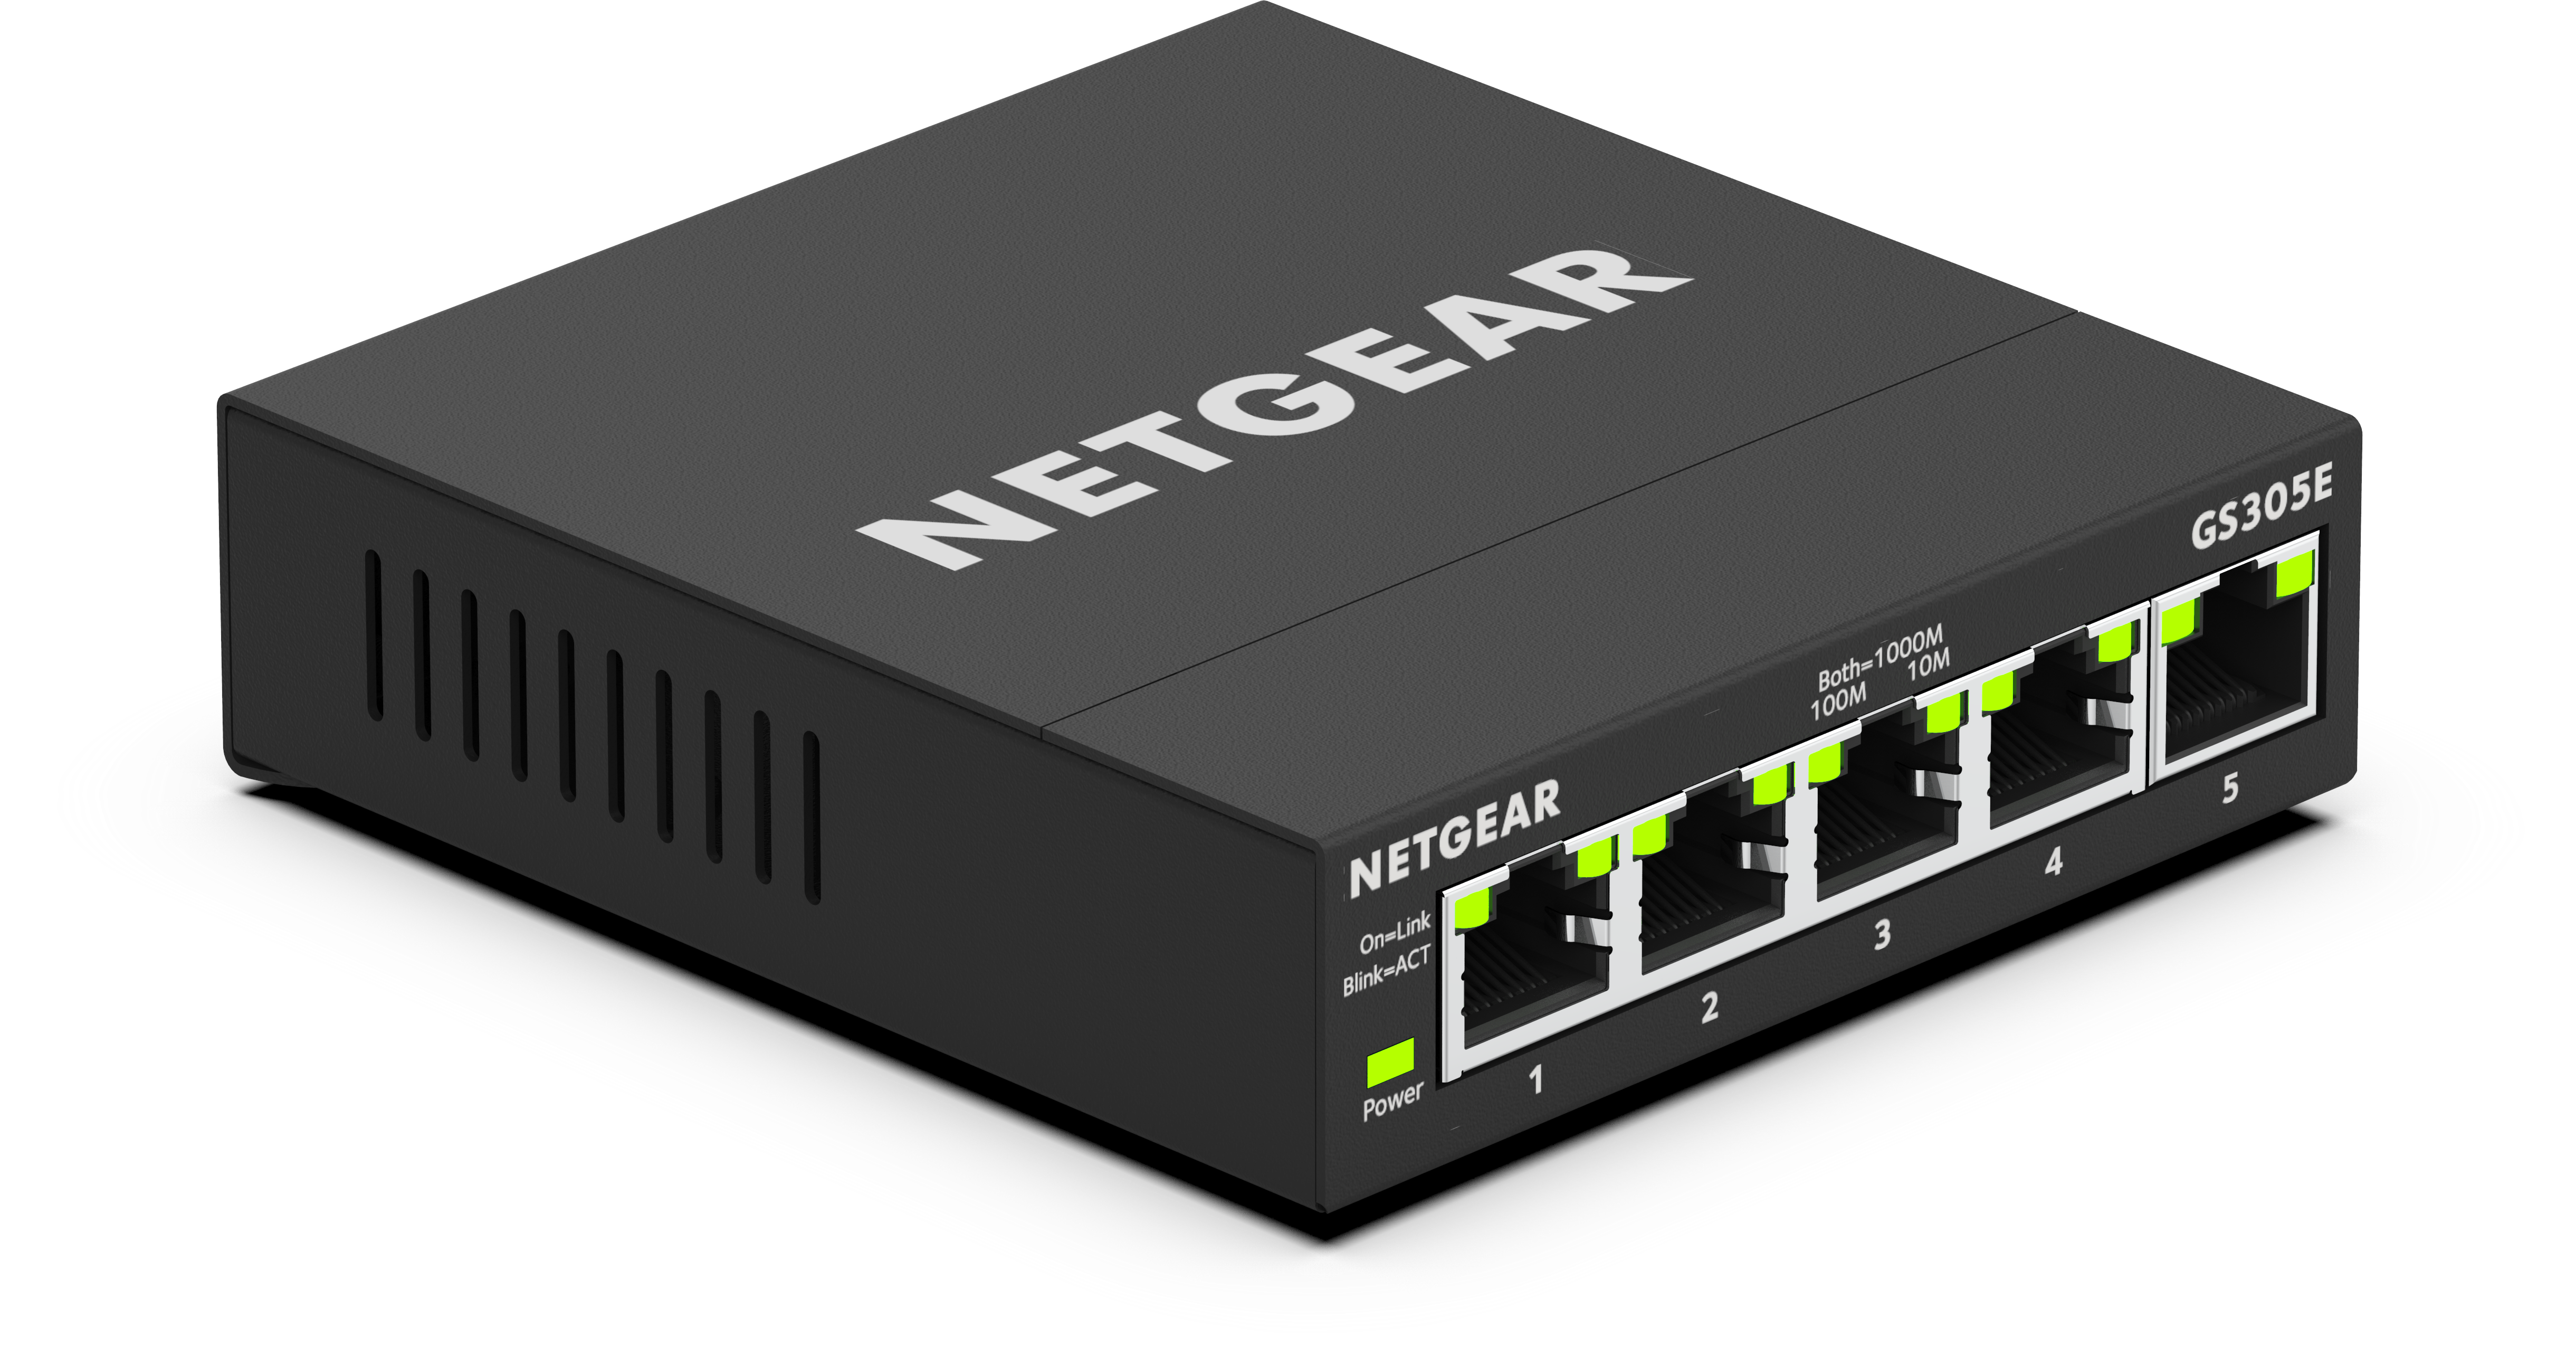 Netgear GS305E (5 Ports), Netzwerk Switch, Schwarz